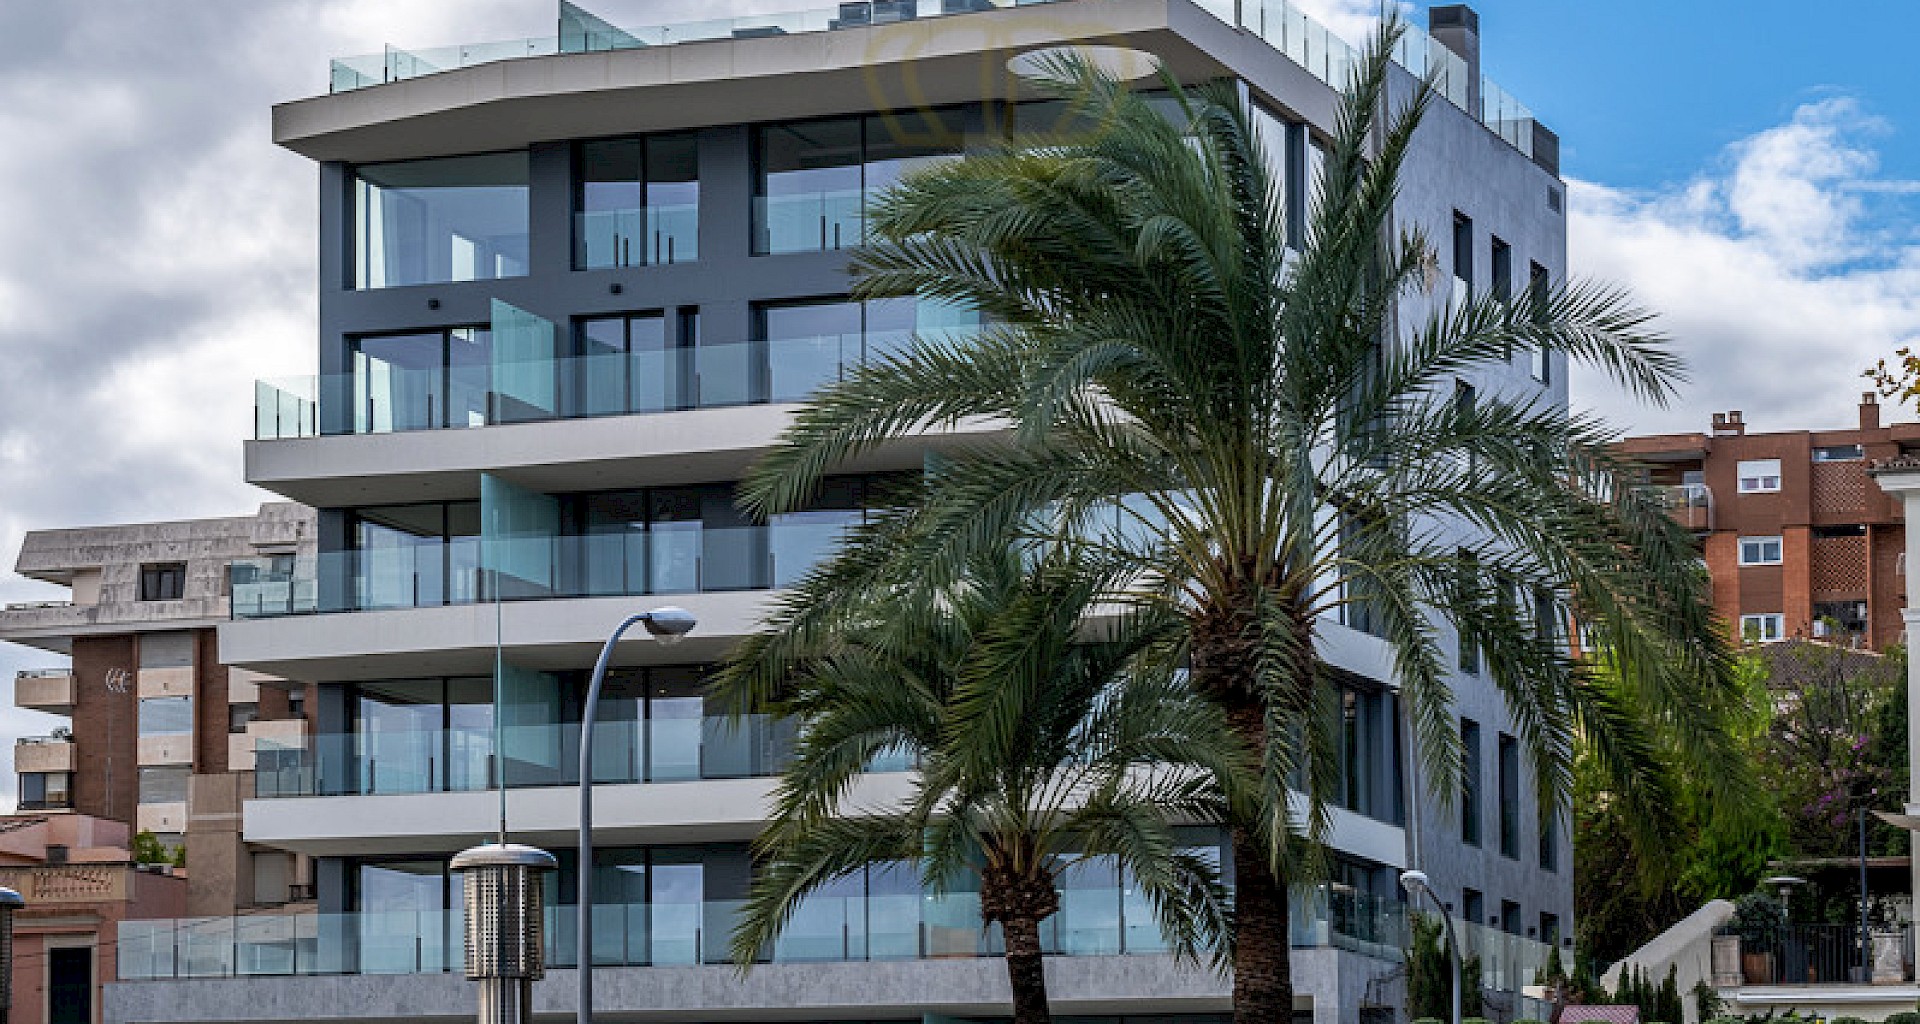 KROHN & LUEDEMANN Exclusivo ático de nueva construcción en Palma en el Paseo con piscina y vistas al puerto Palma Luxus Penthaus am Hafen  Lofts facade-